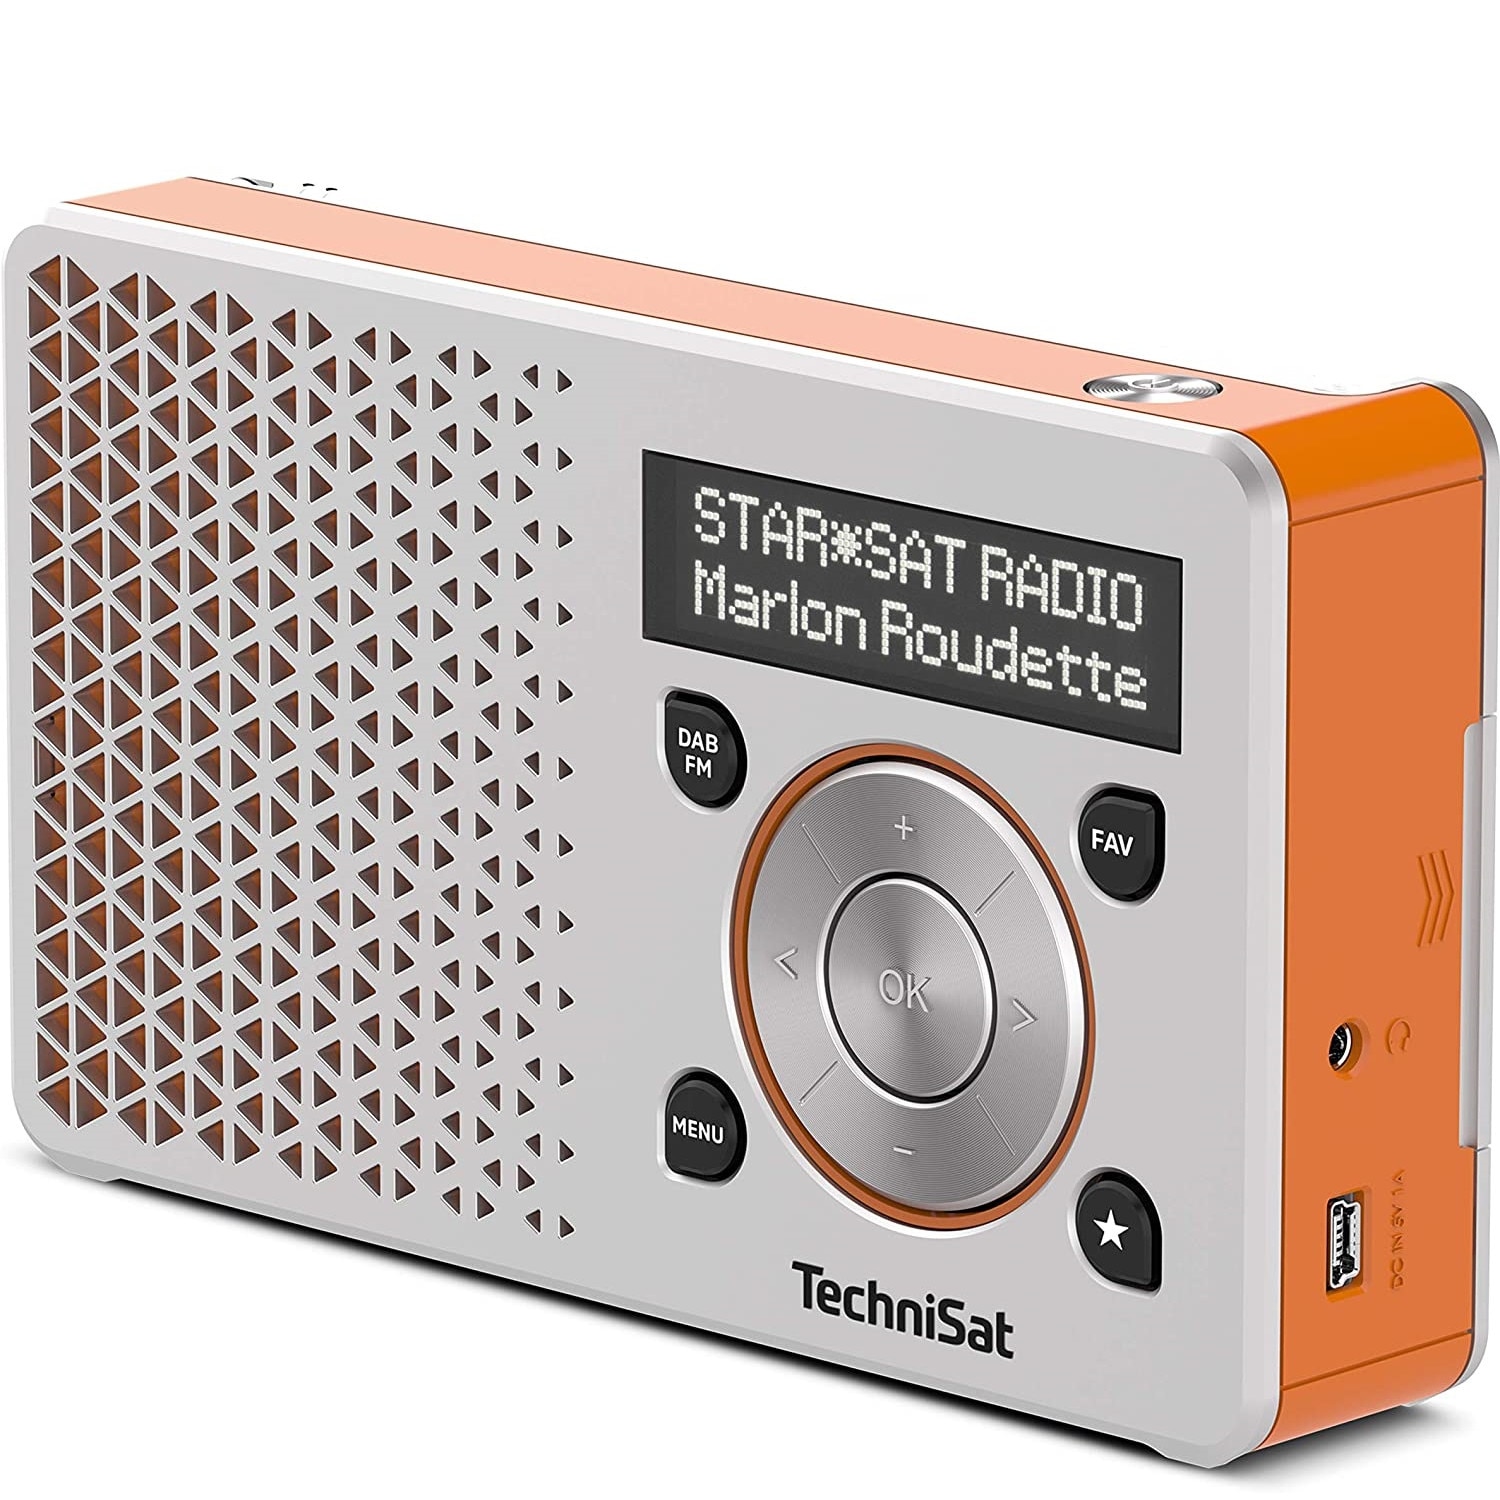 miniUSB, Radio DAB+, 1W, 1, portabil, Digitradio TechniSat ecran OLED, portocaliu/argintiu